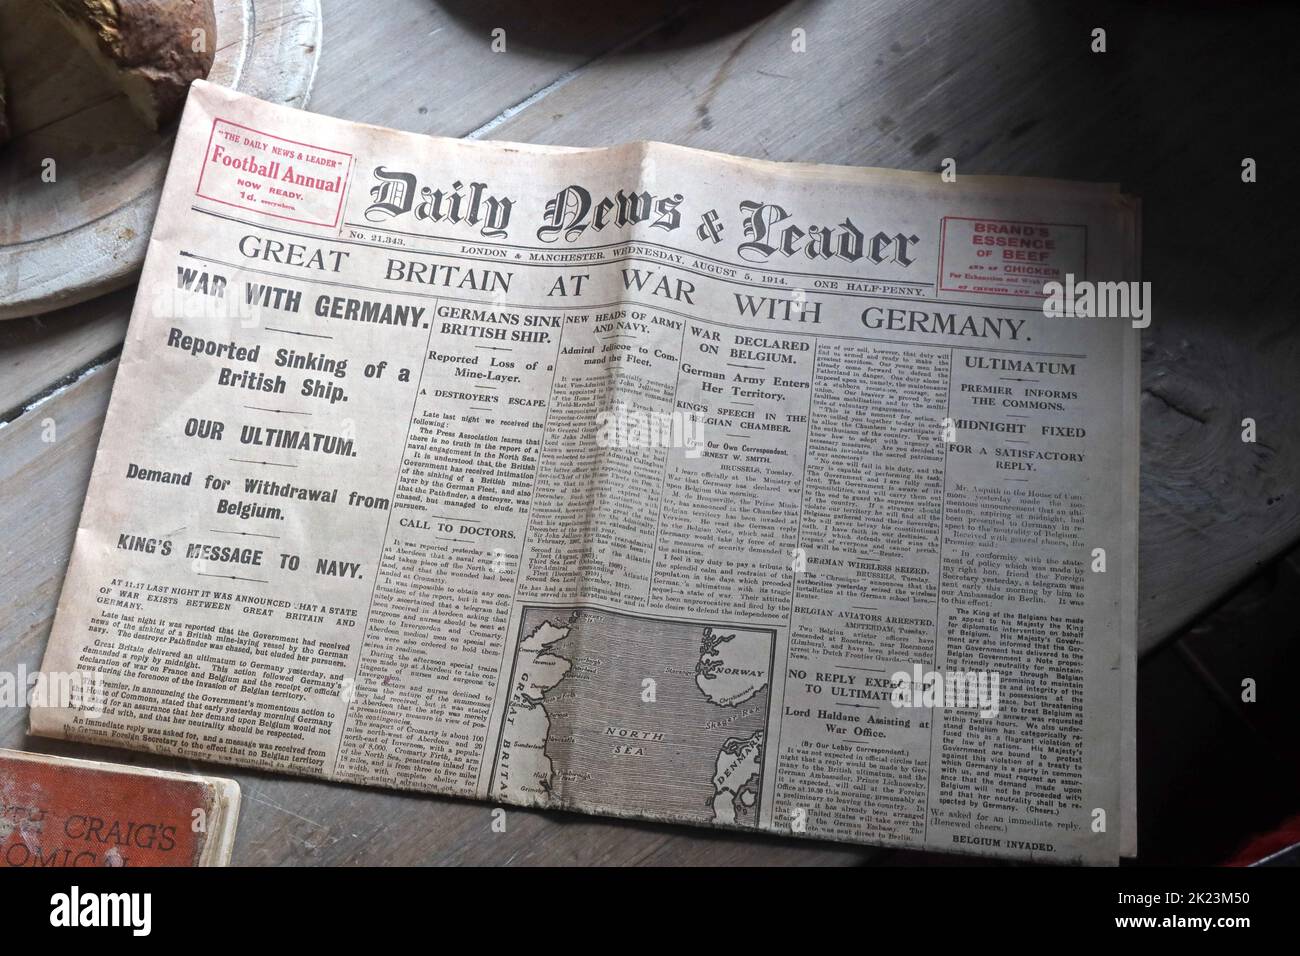 Daily News and Leader, titular de 1914,Gran Bretaña en guerra con Alemania, sobre una mesa de cocina Foto de stock